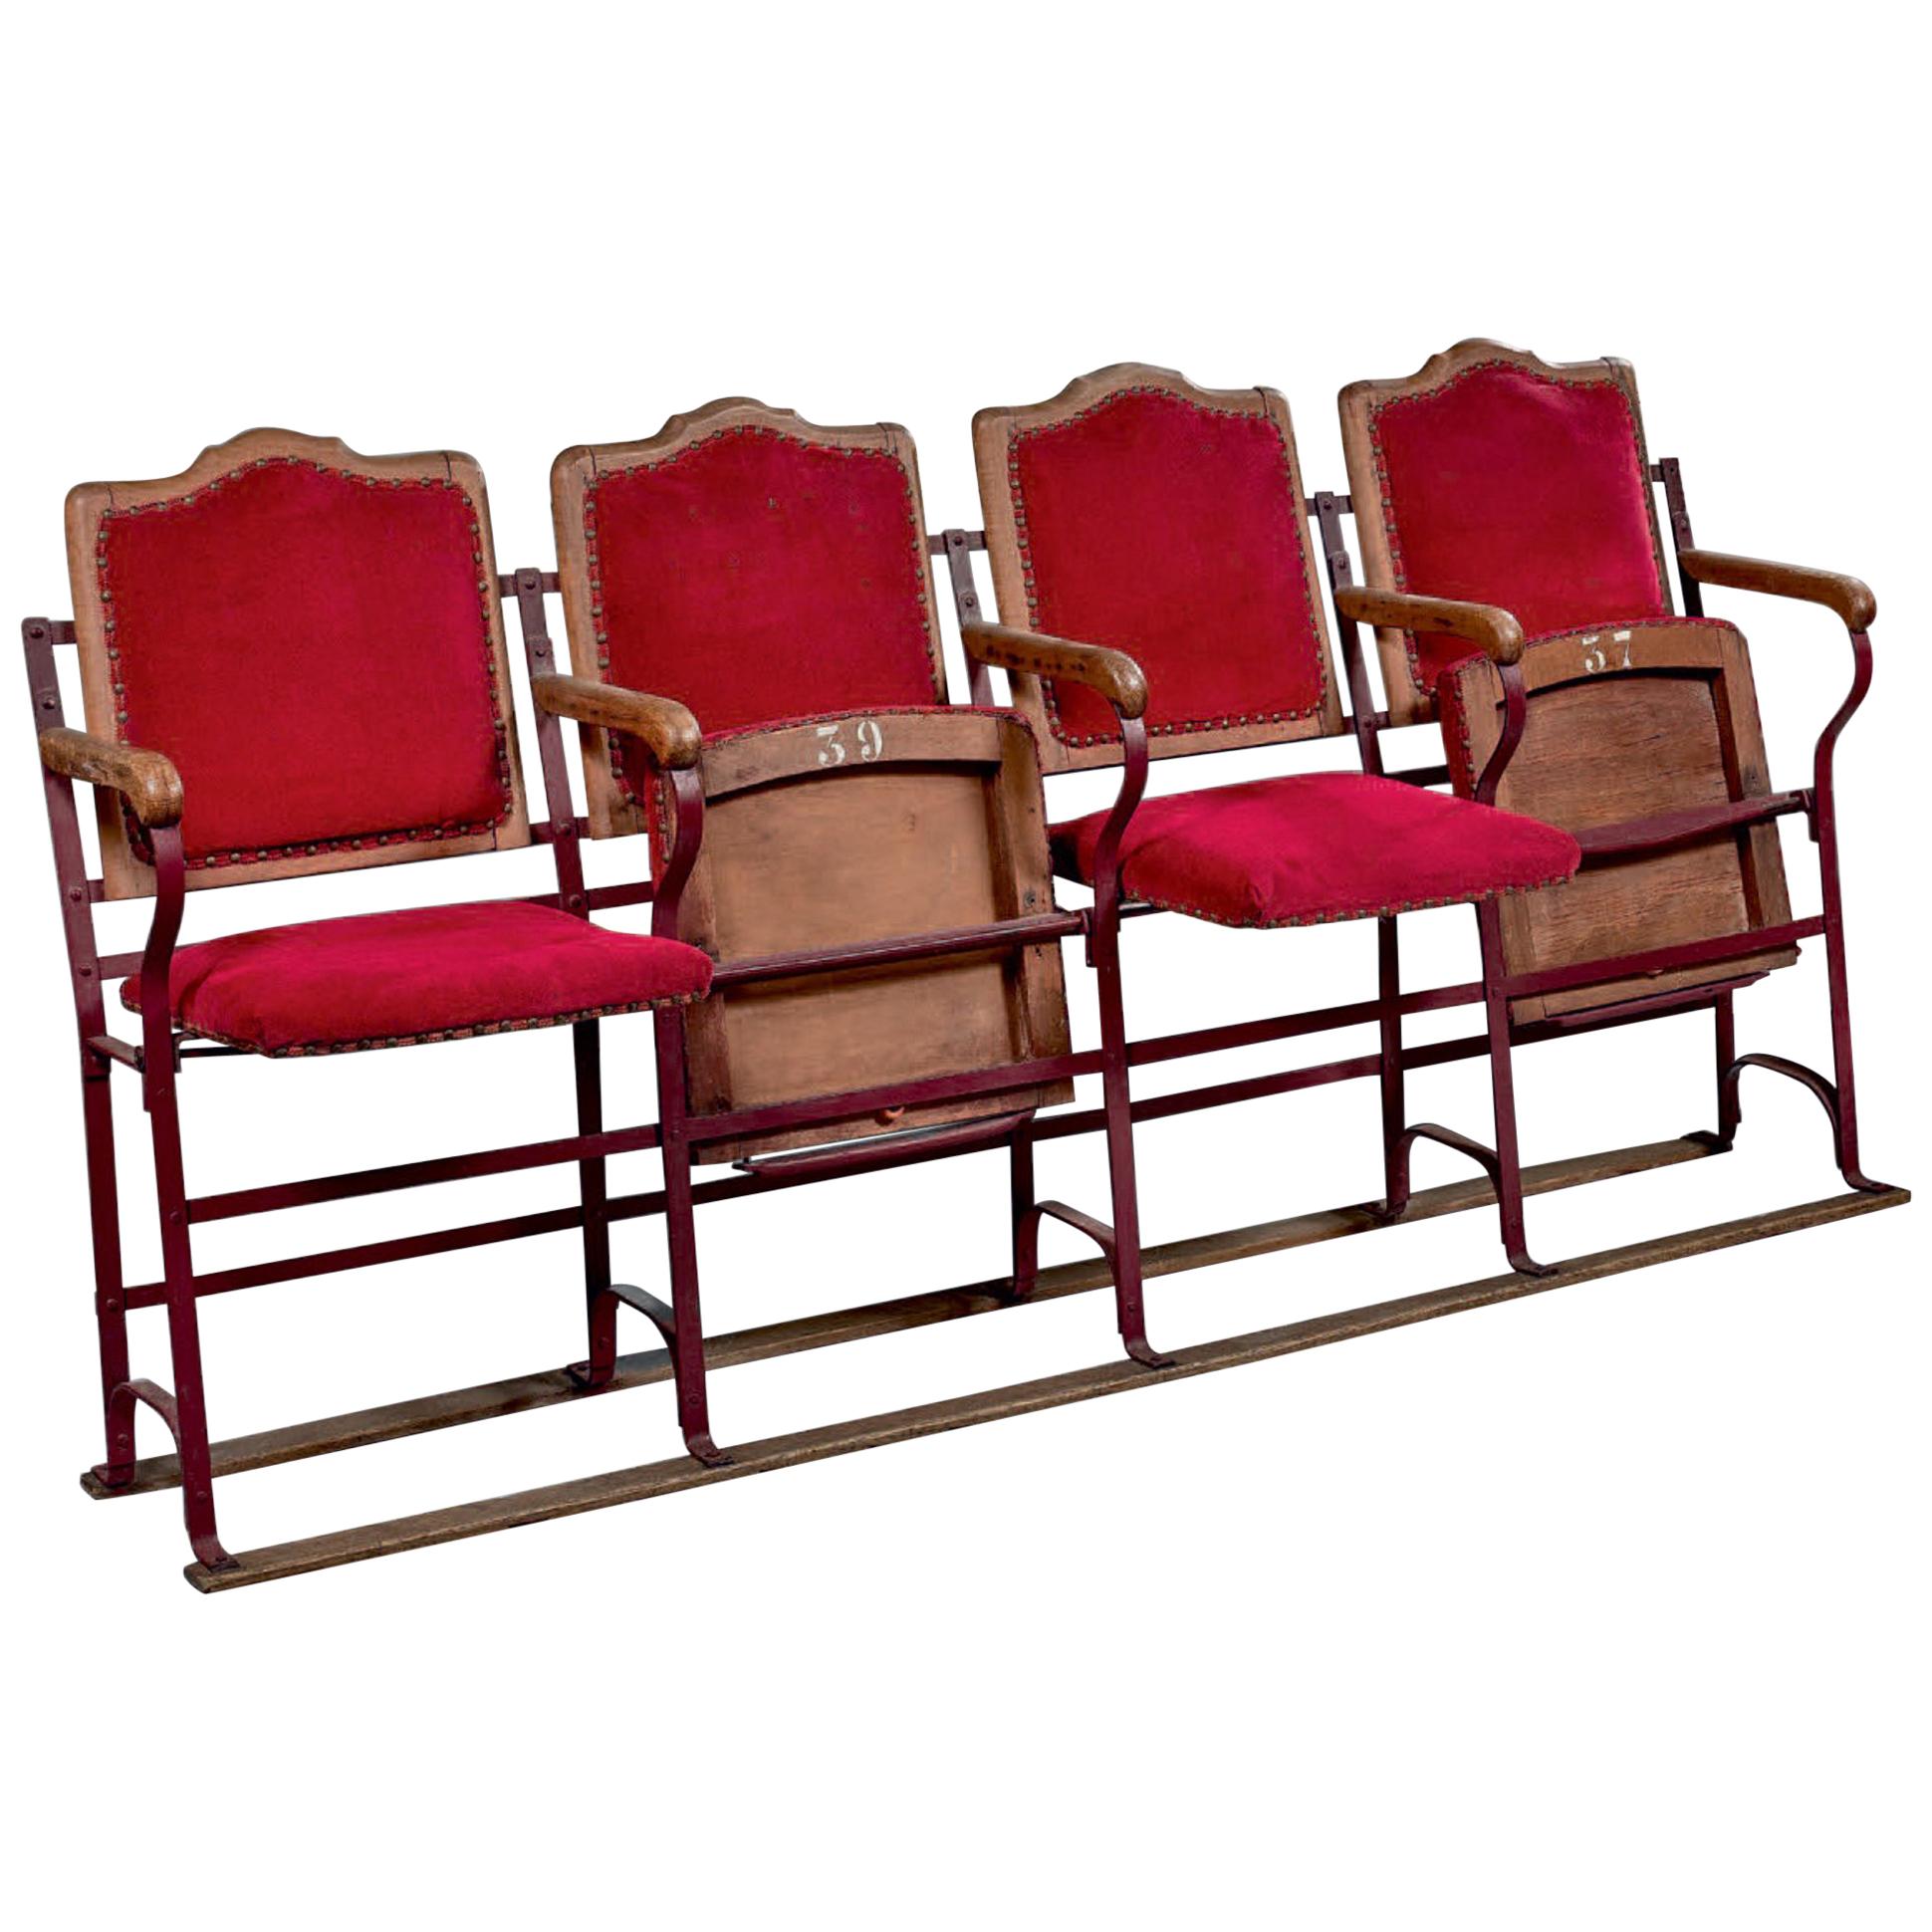 Französische viersitzige Kinosessel aus Holz und Metall aus rotem Samt, 20. Jahrhundert